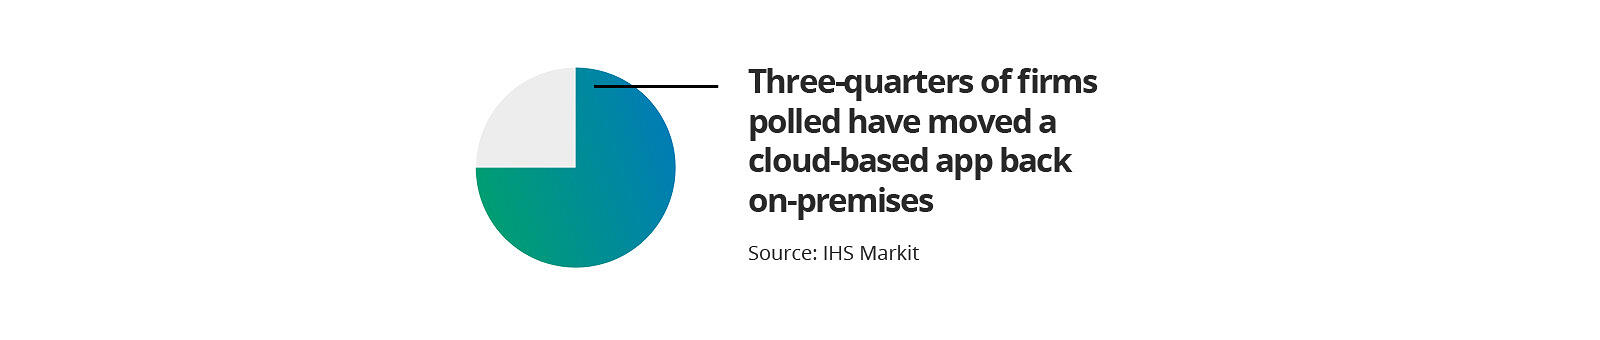 四分之三的公司已经将云应用程序移回